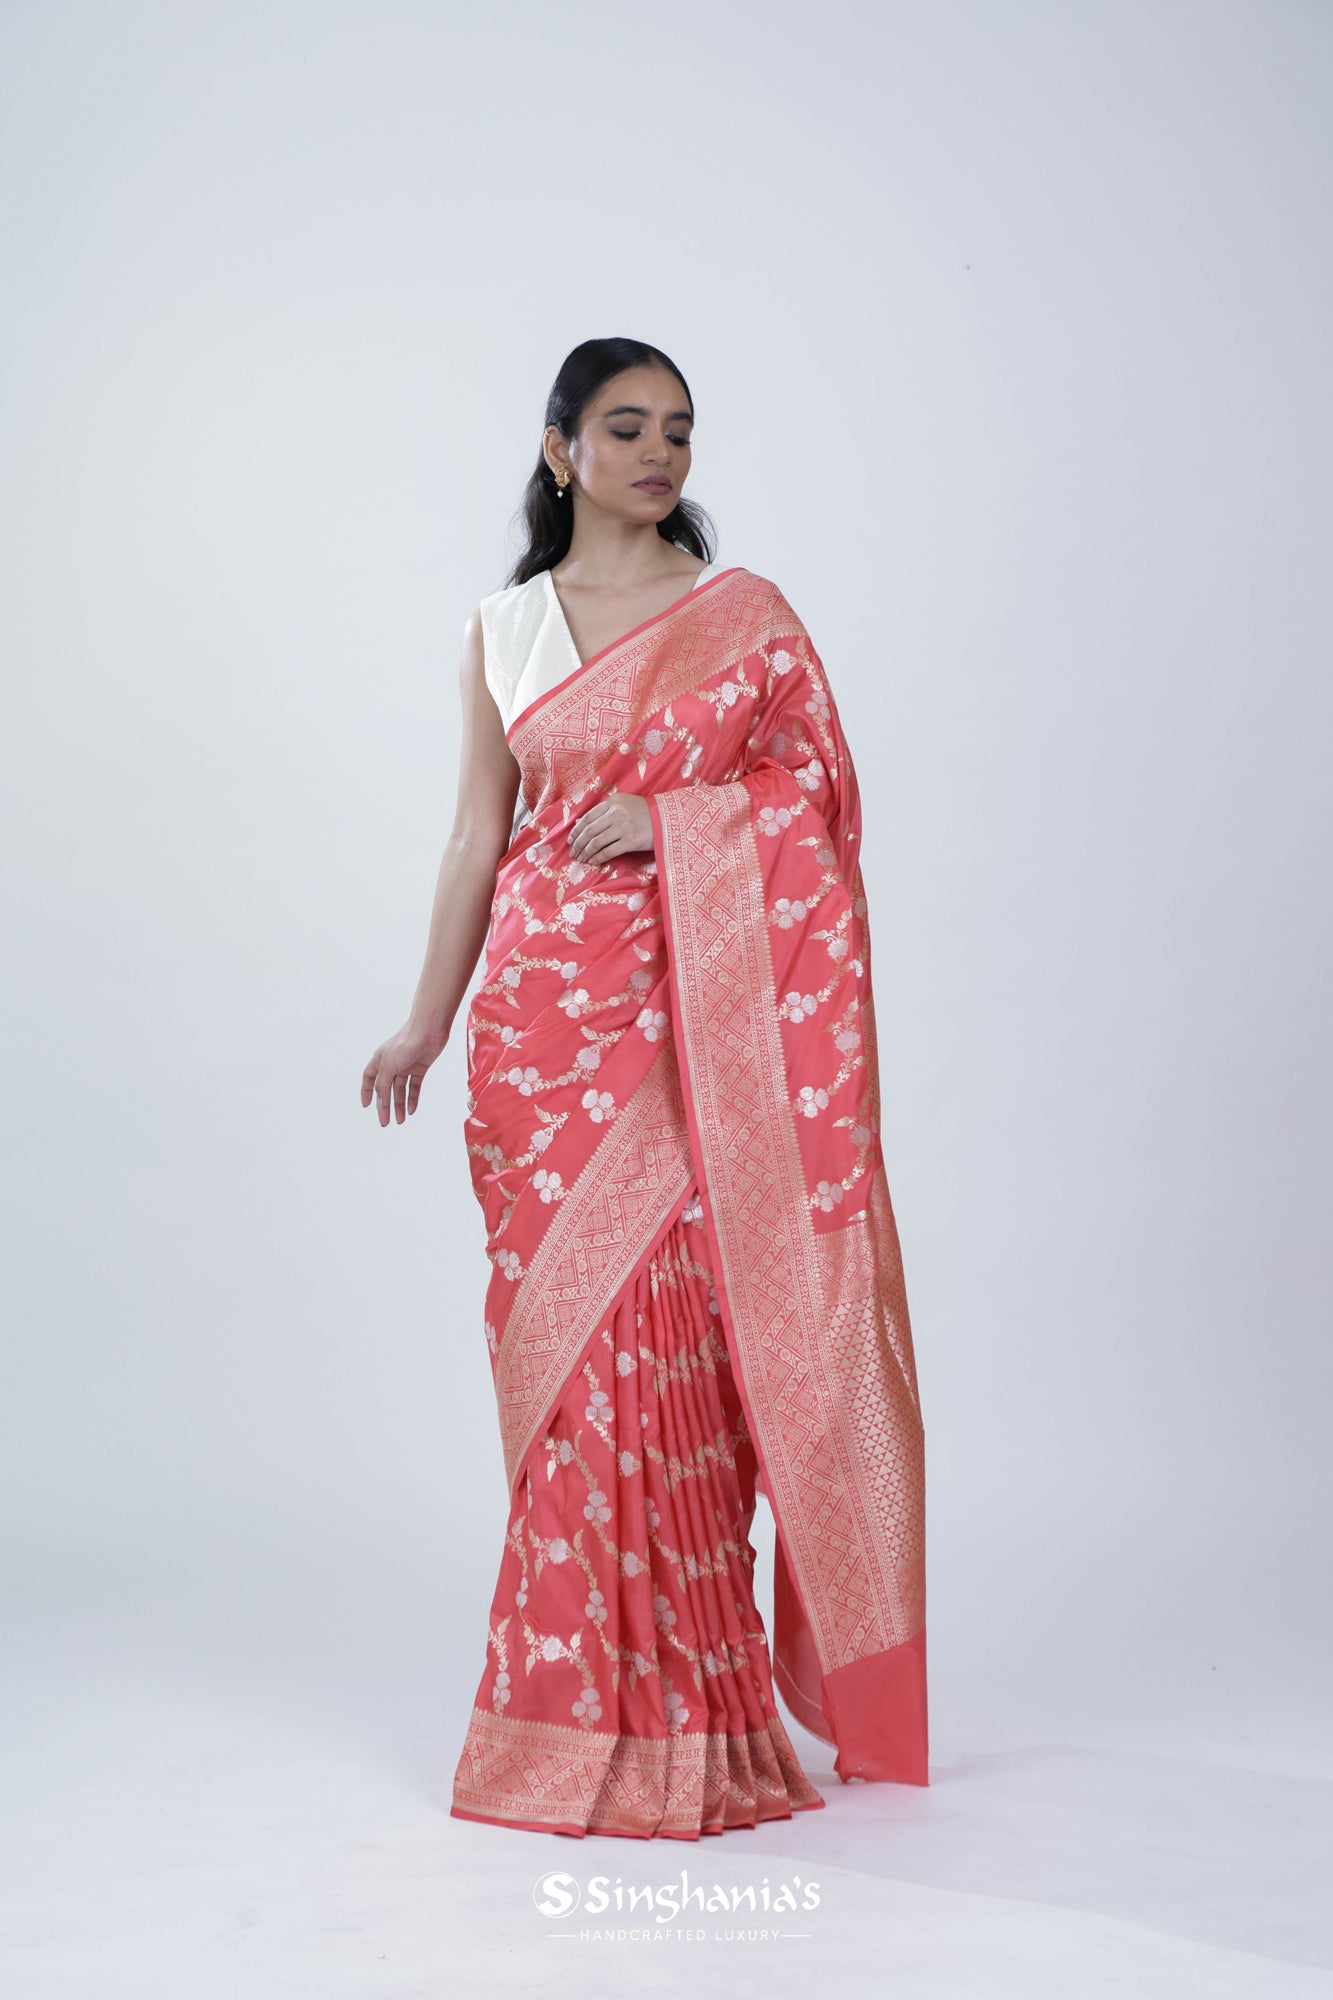 Candy Pink Banarasi Silk Saree With Floral Jaal Weaving